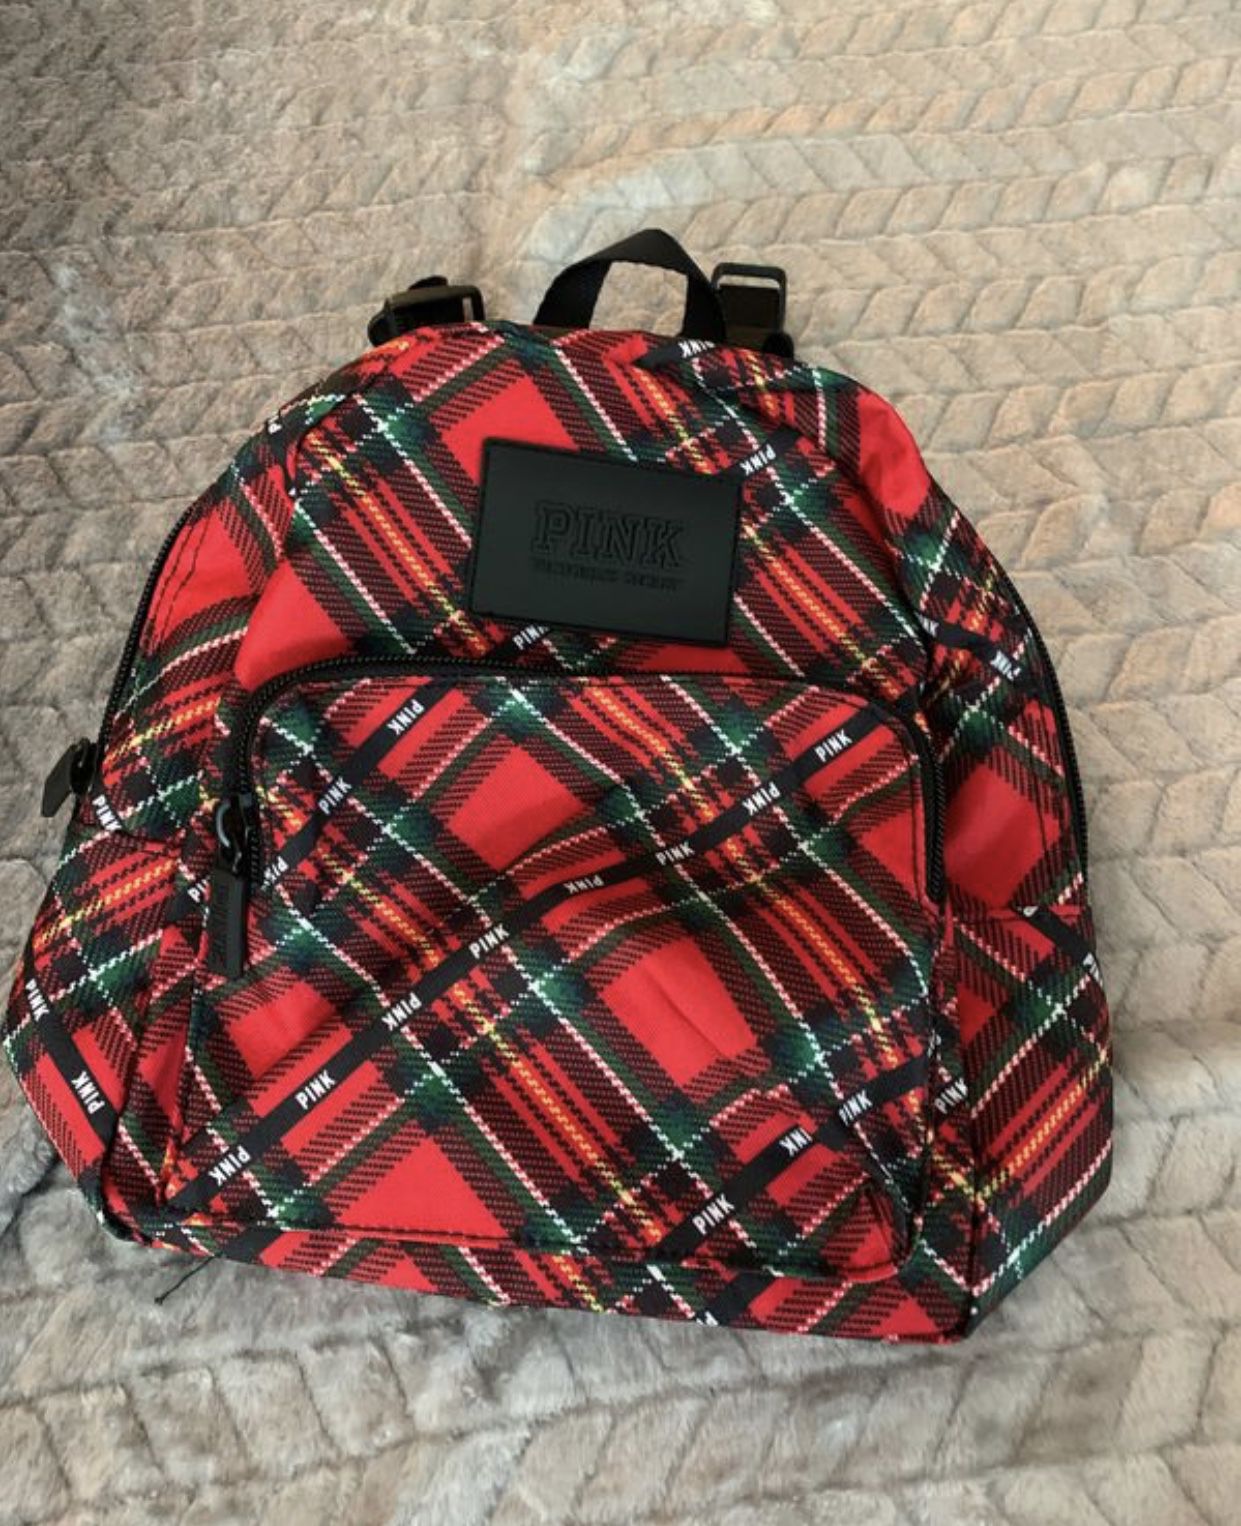 New pink mini backpack. 🎒 $20